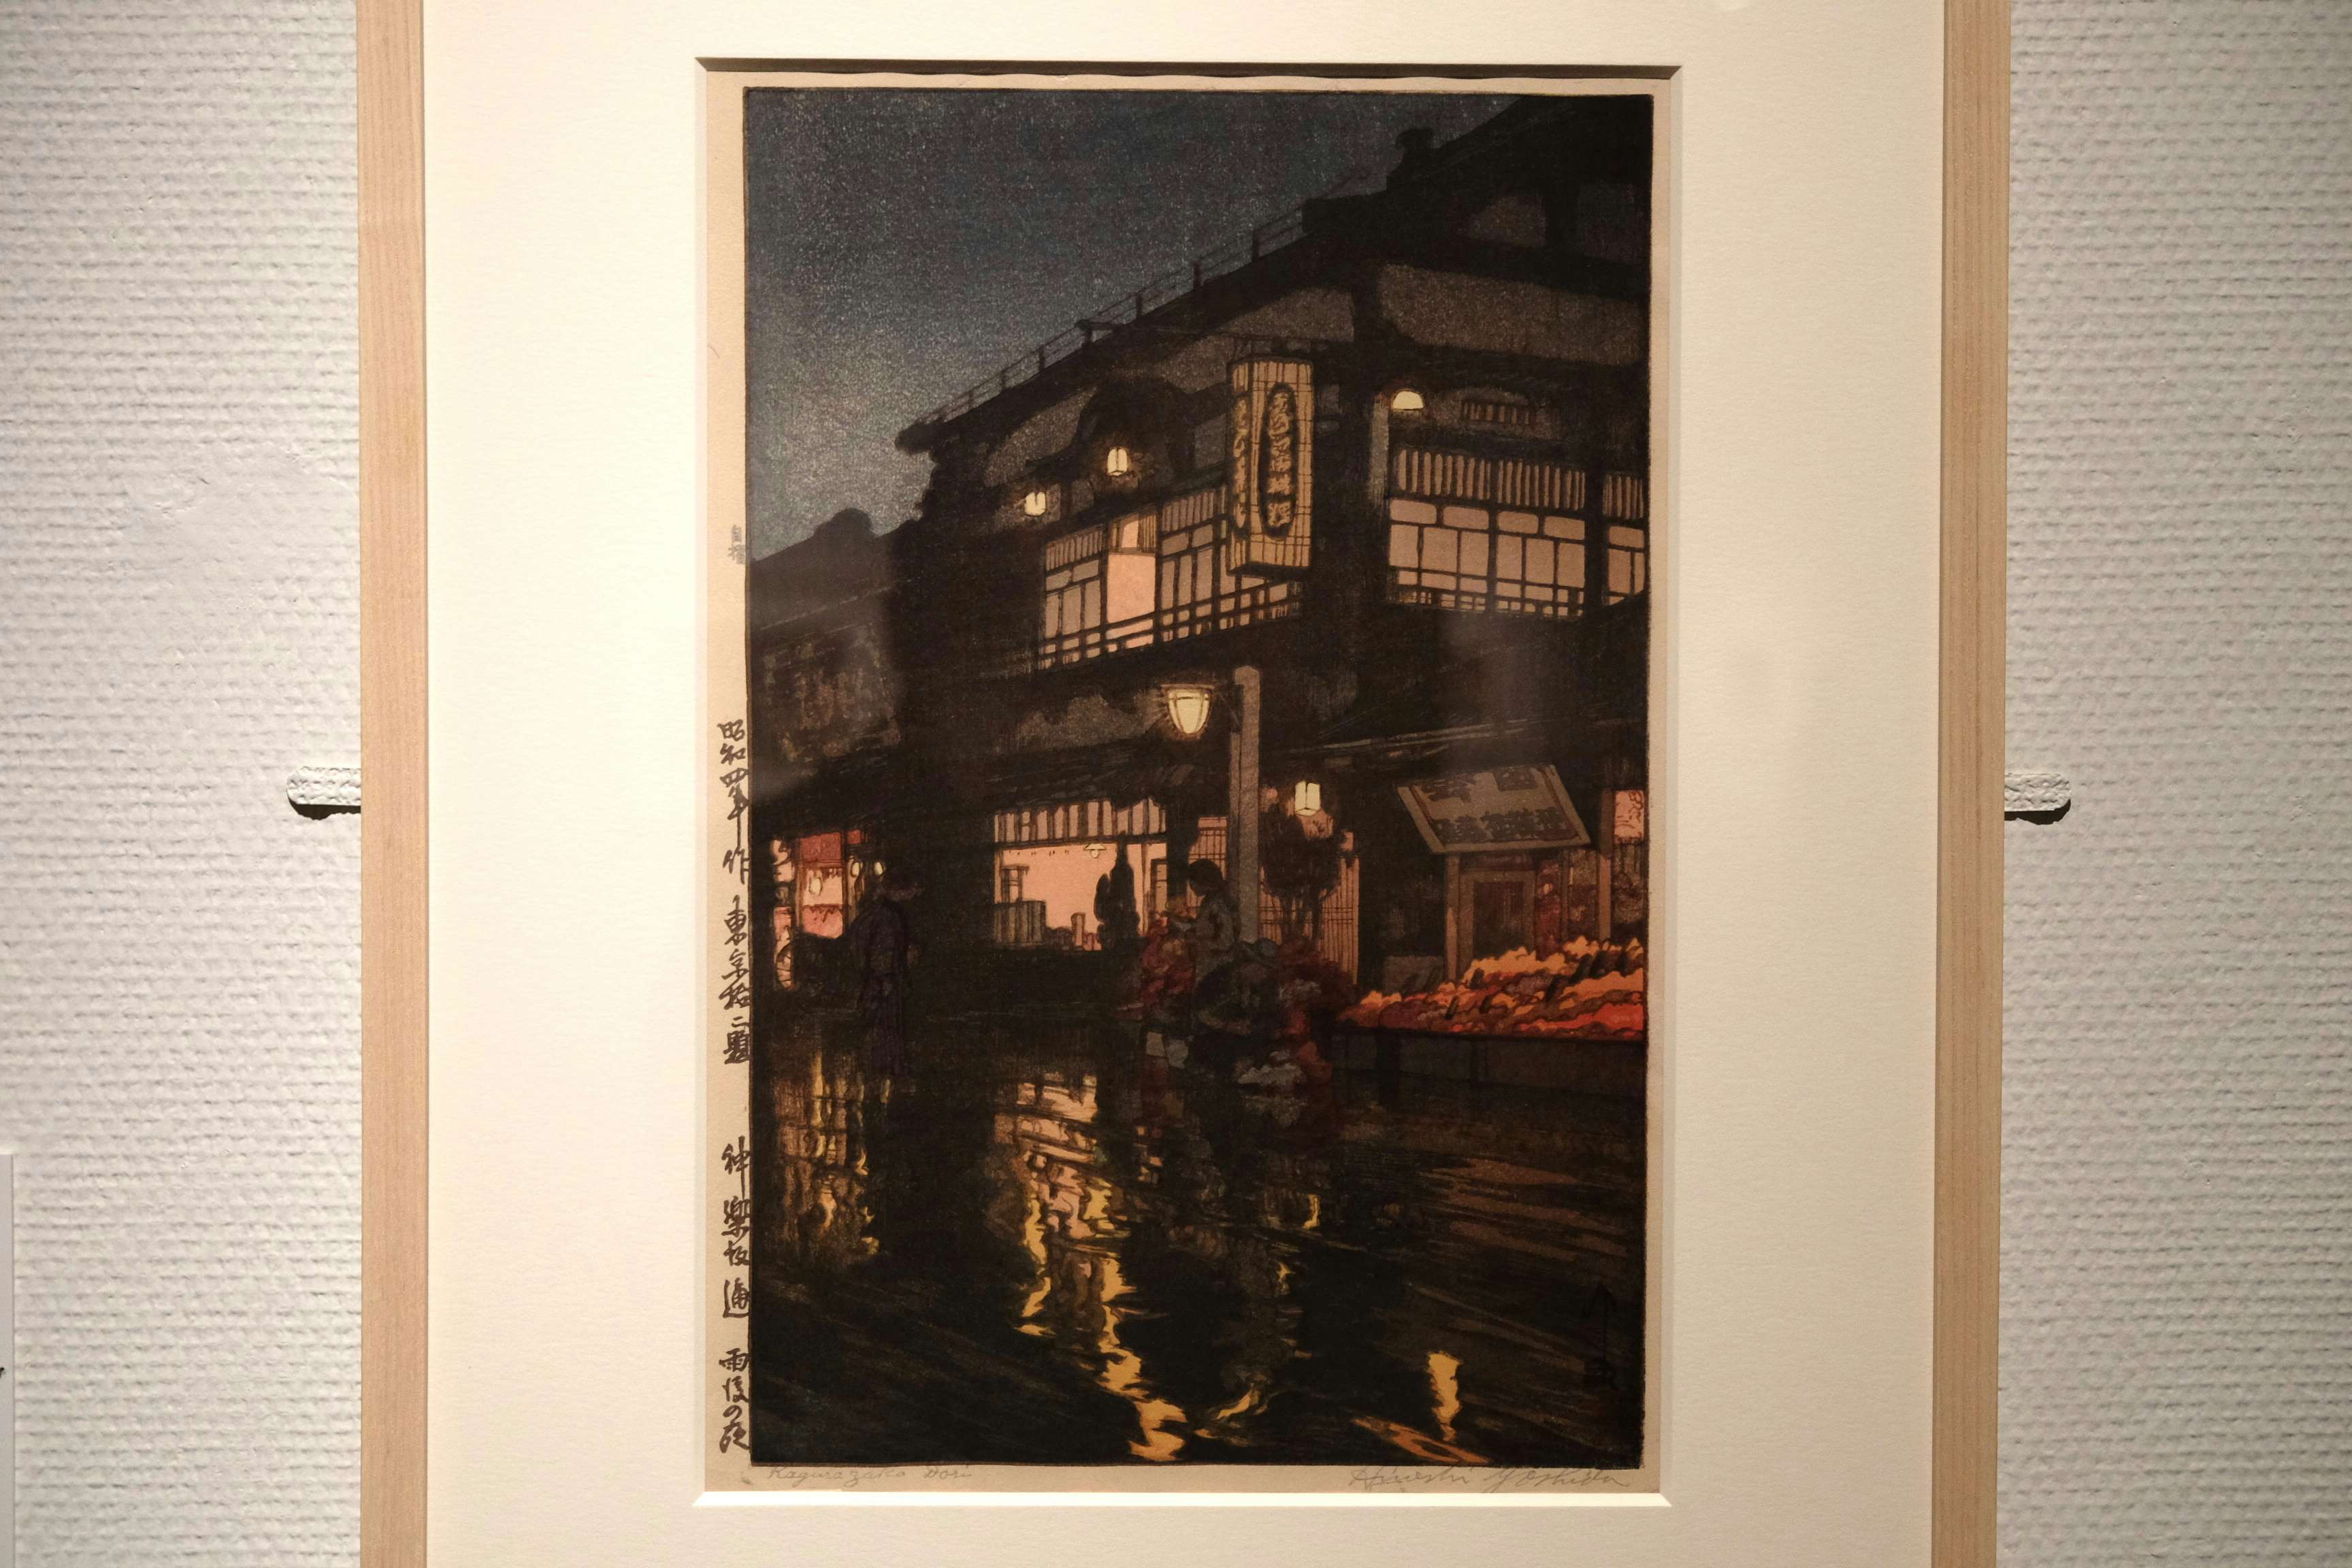 空気まで写し取る木版画が一堂に。「没後70年 吉田博展」でその 